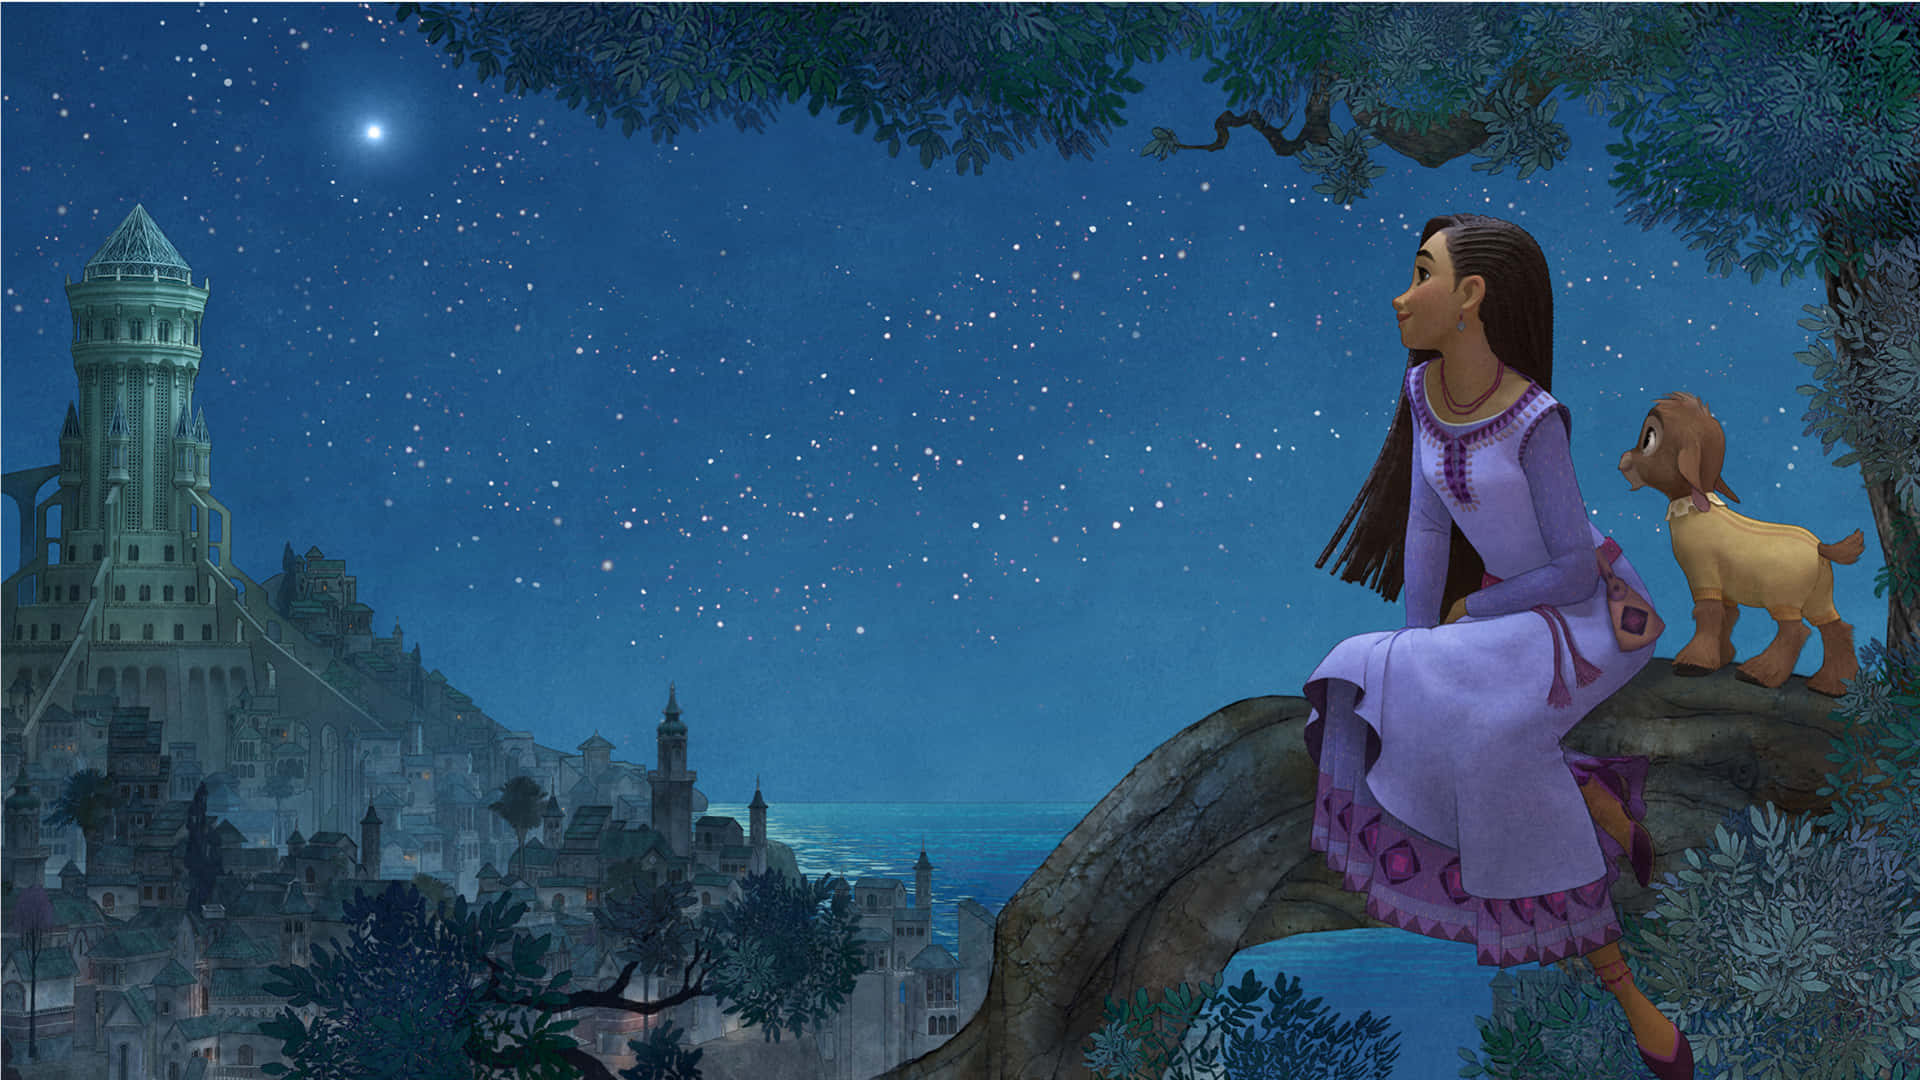 Magical Disney 3D Movie Moments Wallpaper